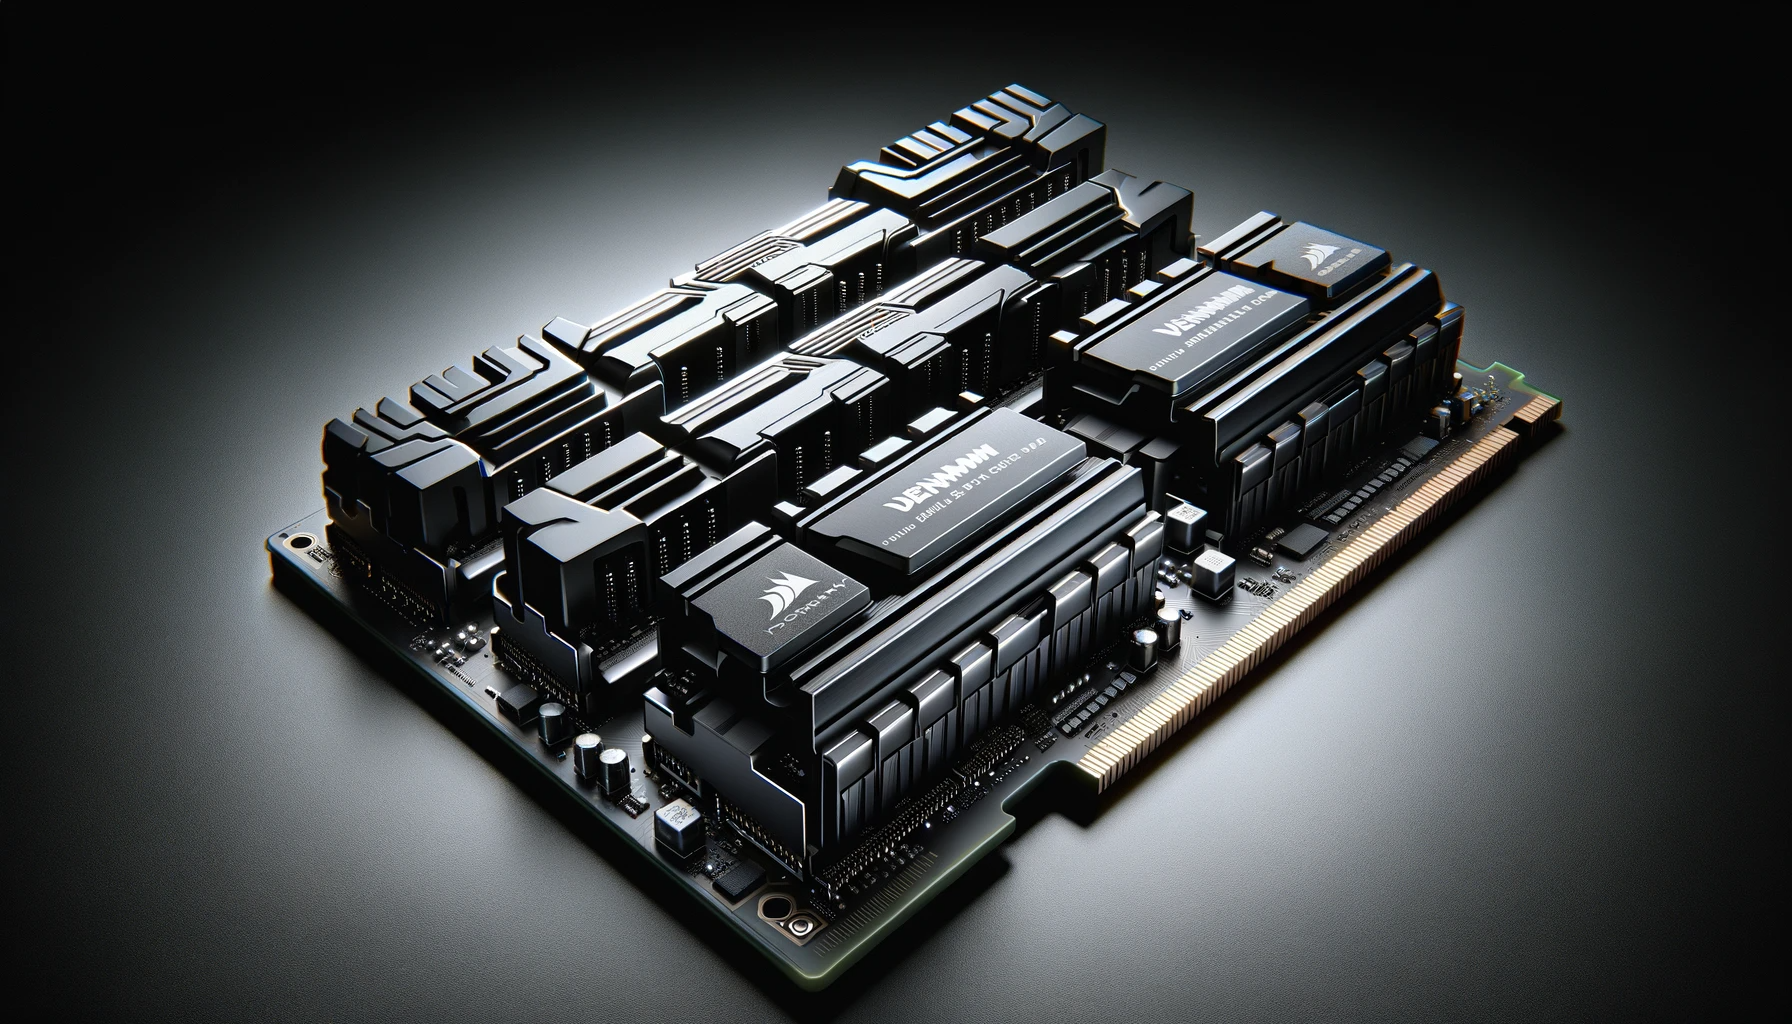 Corsair Vengeance LPX 16Go (2x8Go) DDR4 3200MHz C16 XMP 2.0 Kit de Mémoire  Haute Performance - Noir - Mémoire RAM - Achat & prix